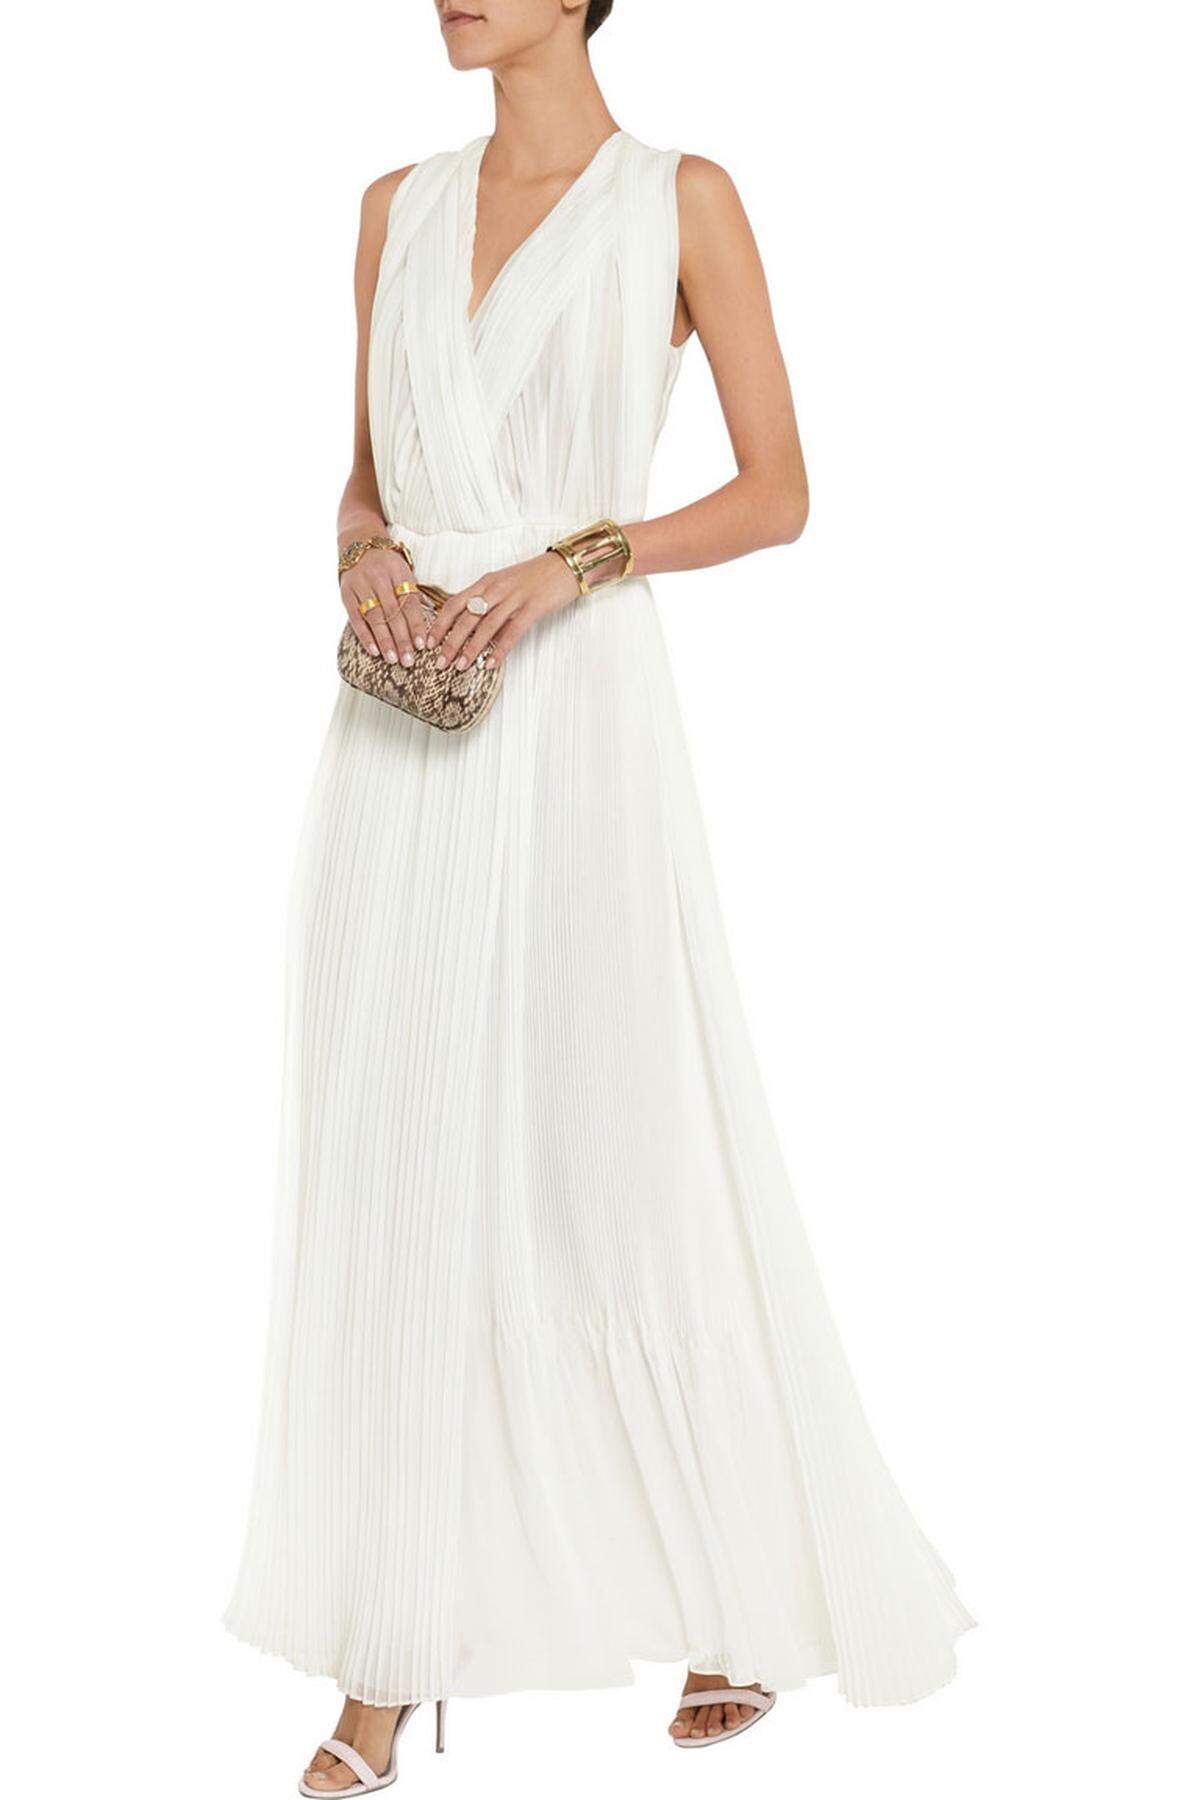 Entscheidet sich die Braut aber gegen eine Trauung in Weiß und trägt eine Farbe, dann ist entsprechend diese Farbe für die weiblichen Gäste tabu. Dafür ist Weiß wieder im Rennen. Plissee-Robe von Chloé.